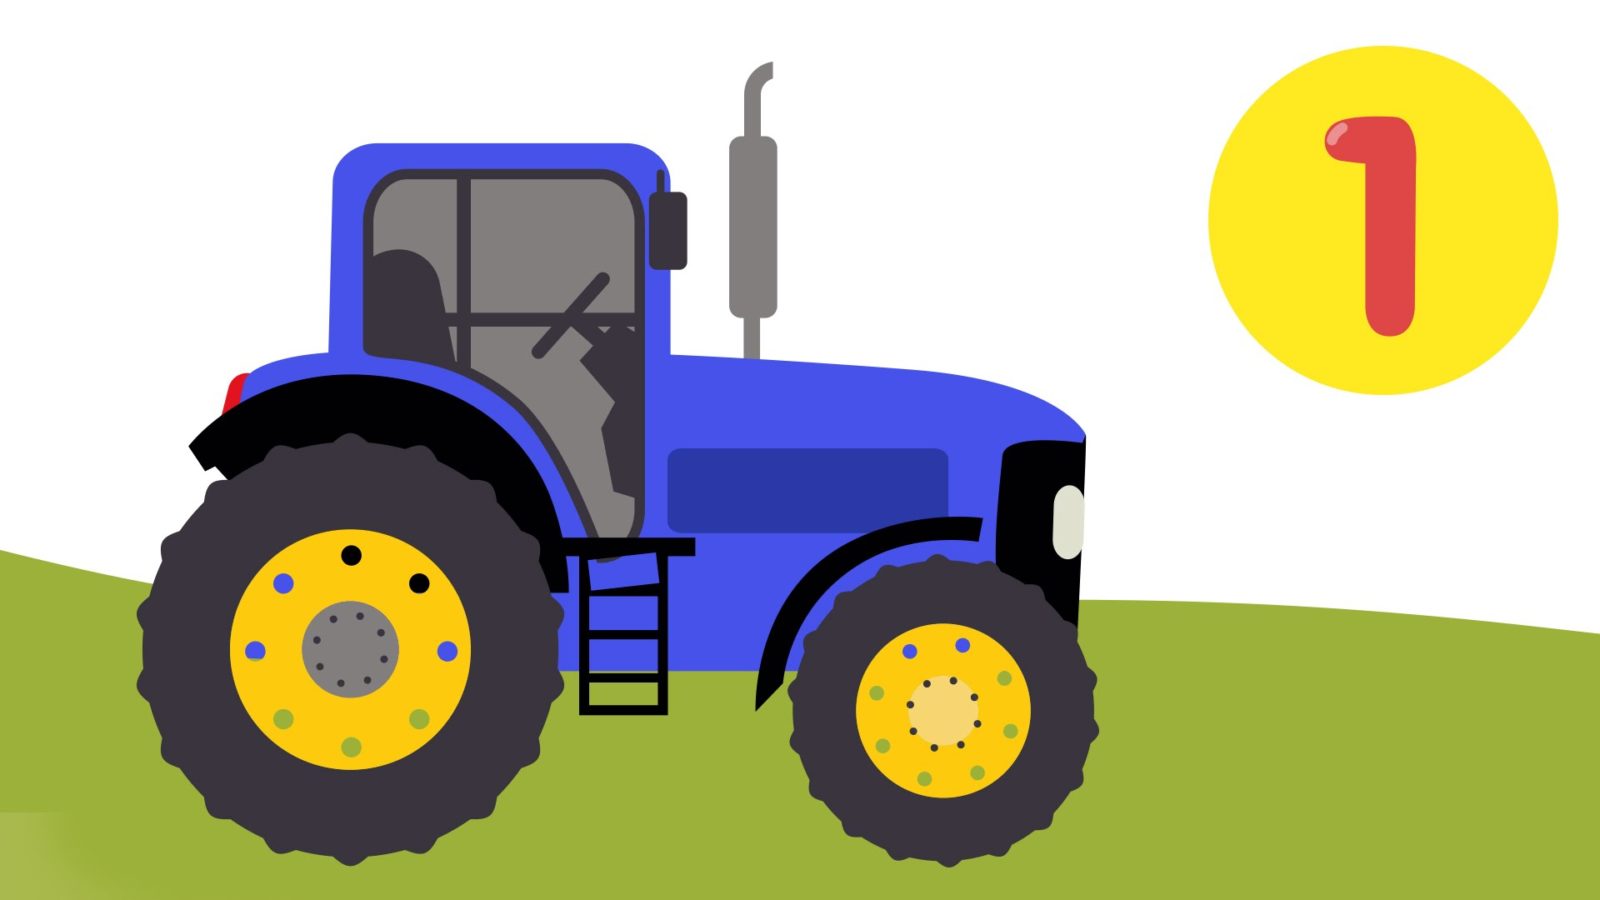 Песенки синяя машинка. Синий трактор. Трактор мультяшный. Трактор синий для детей. Изображение трактора для детей.